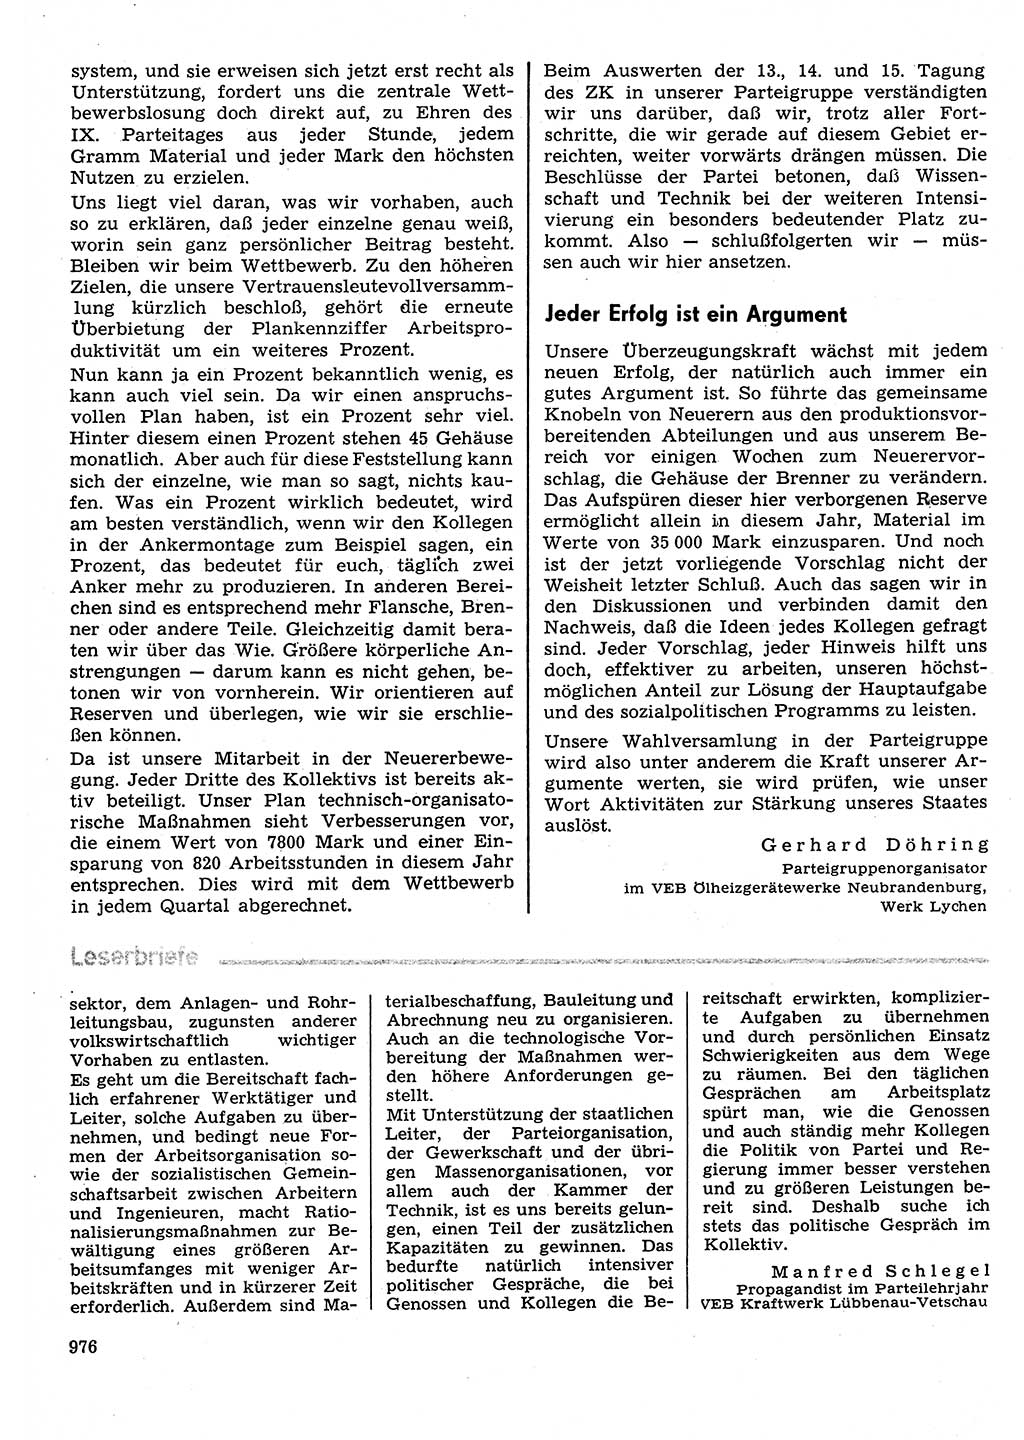 Neuer Weg (NW), Organ des Zentralkomitees (ZK) der SED (Sozialistische Einheitspartei Deutschlands) für Fragen des Parteilebens, 30. Jahrgang [Deutsche Demokratische Republik (DDR)] 1975, Seite 976 (NW ZK SED DDR 1975, S. 976)